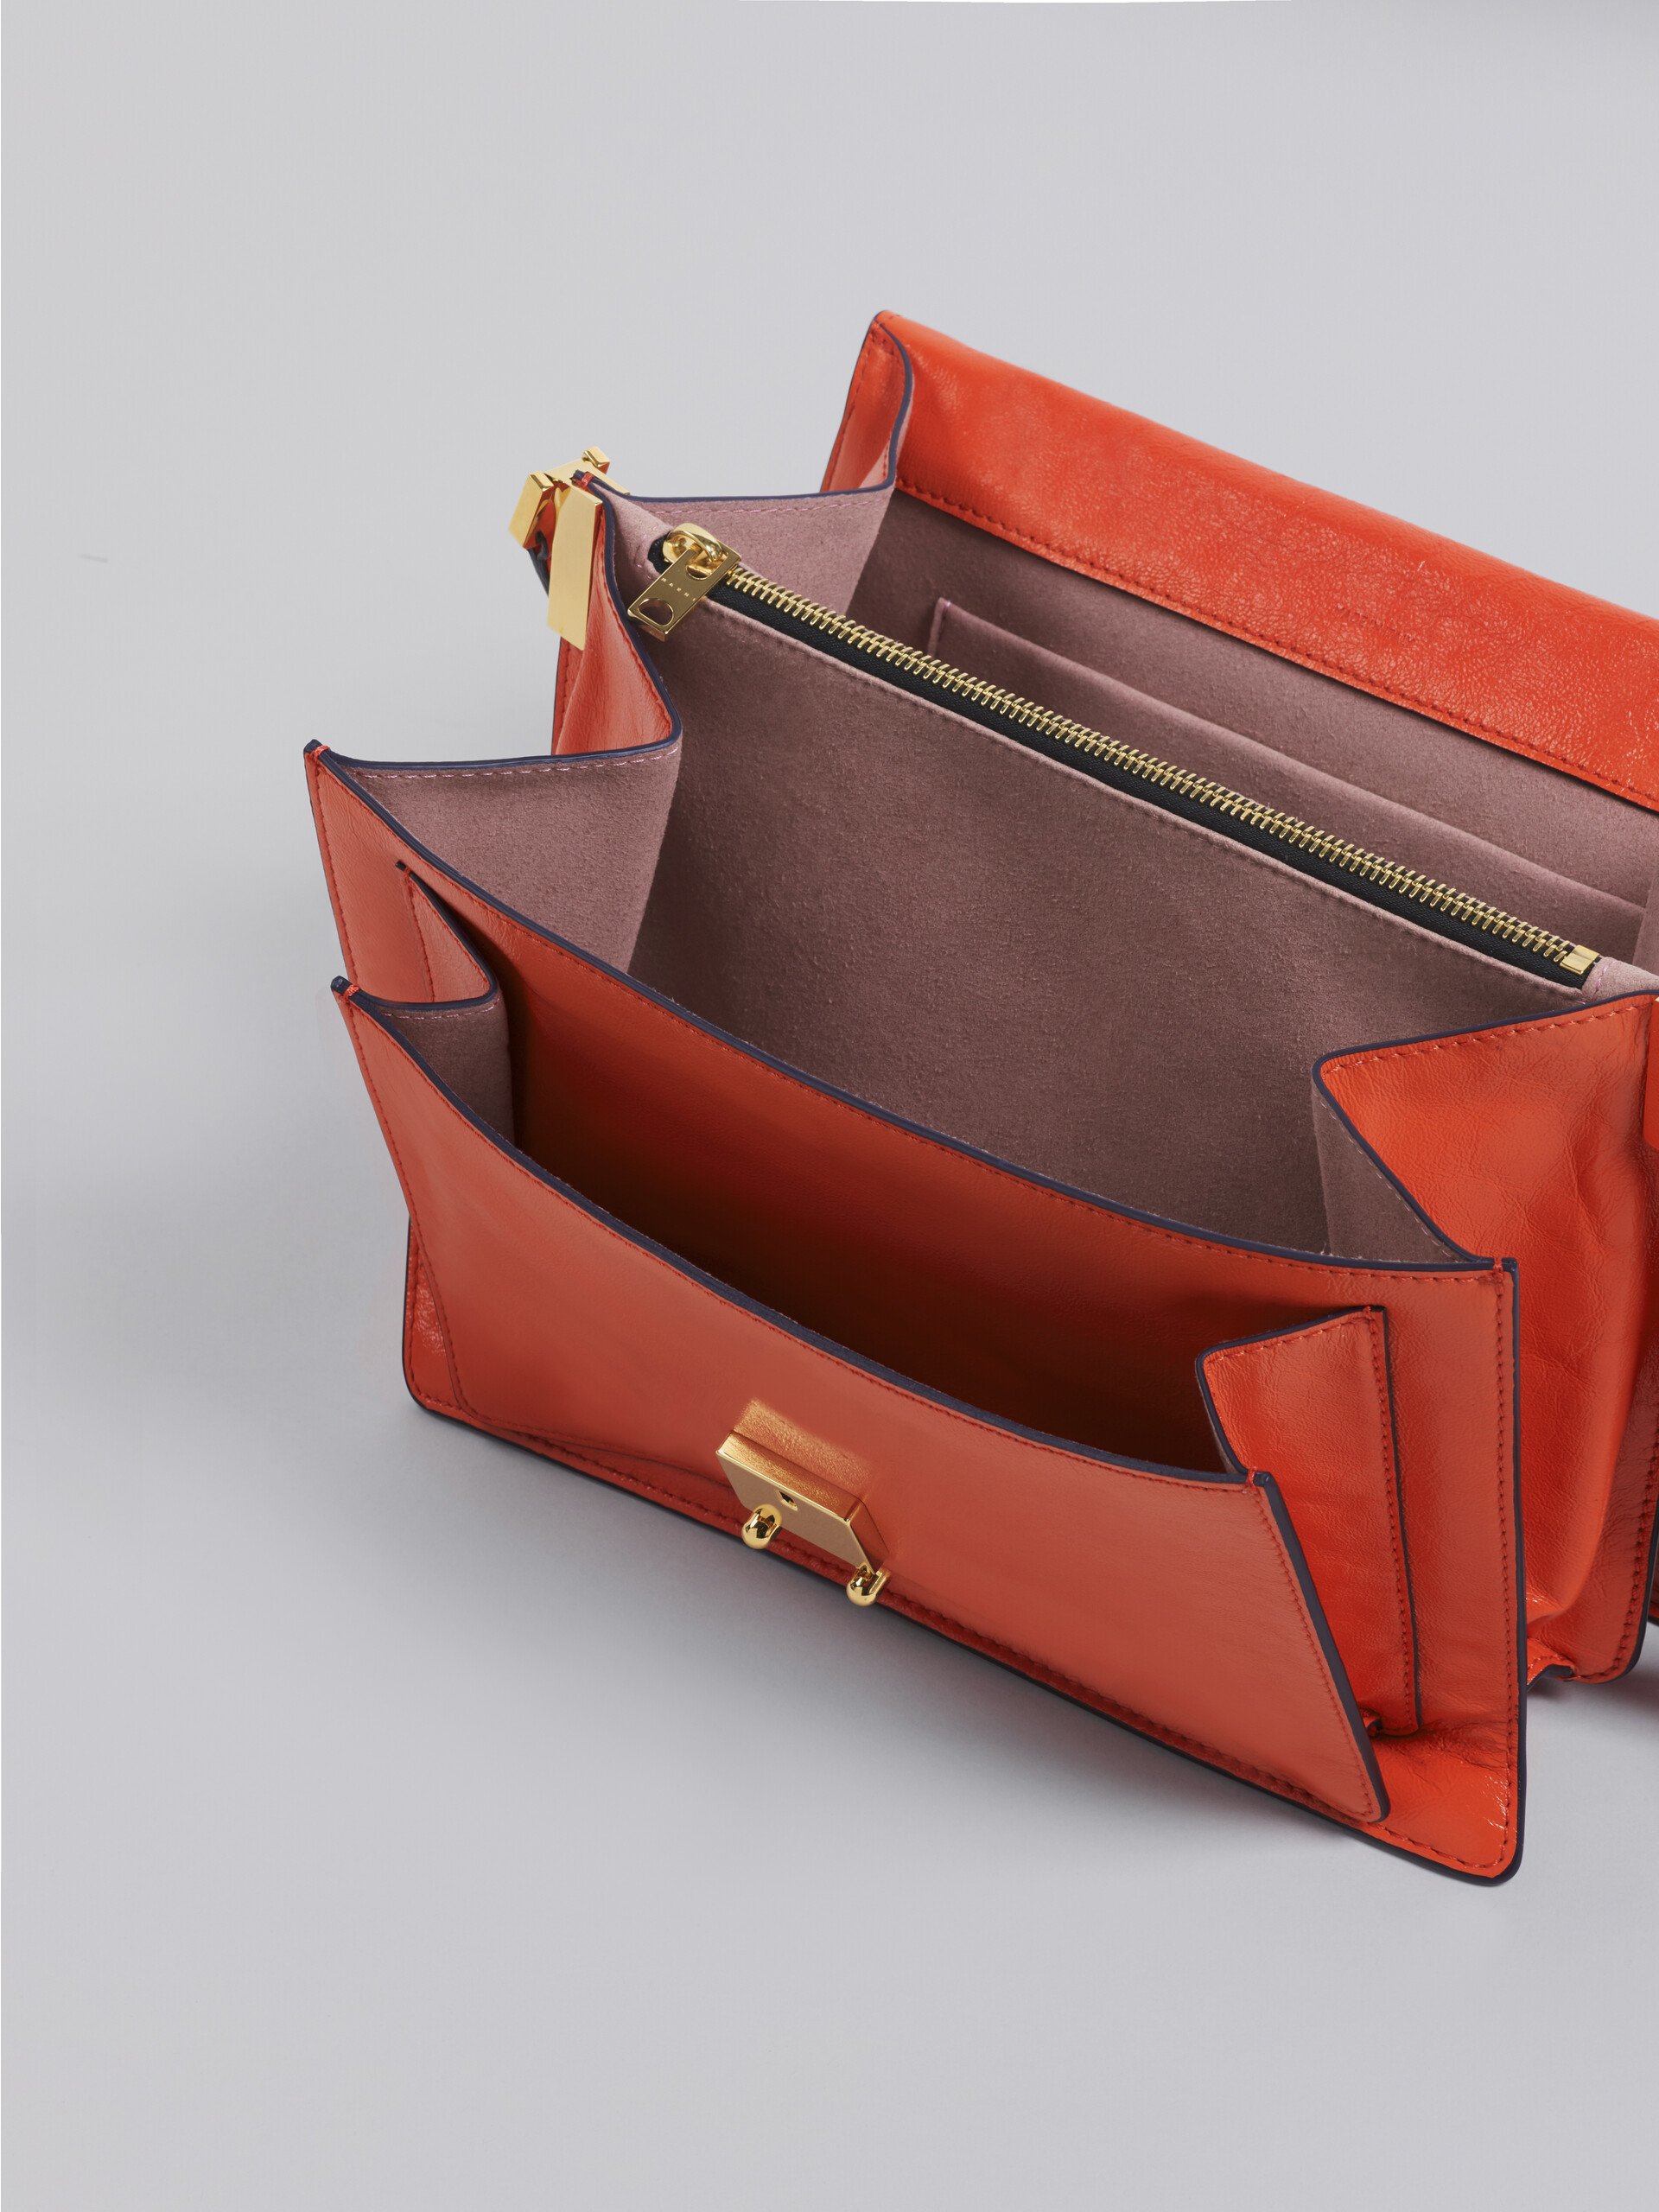 TRUNK SOFT large bag in orange leather - Shoulder Bags - Image 3